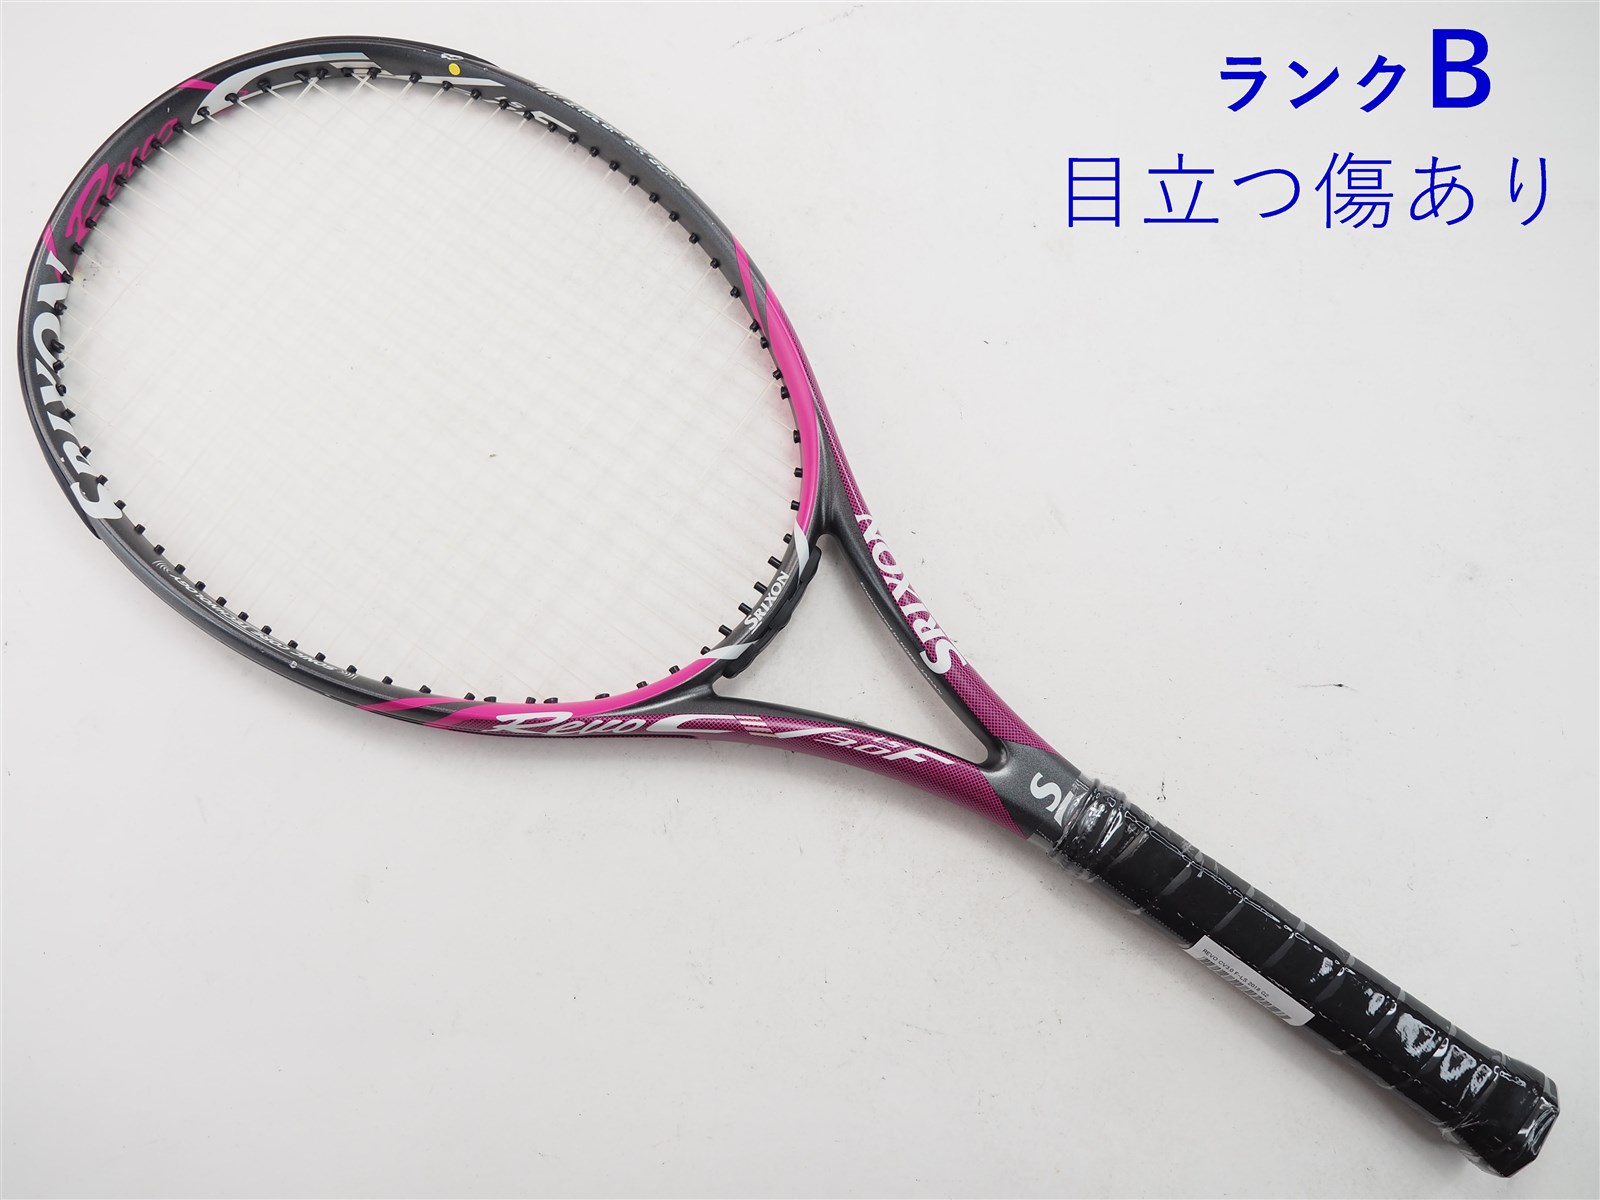 テニスラケット スリクソン レヴォ CV 3.0 2018年モデル (G2)SRIXON 